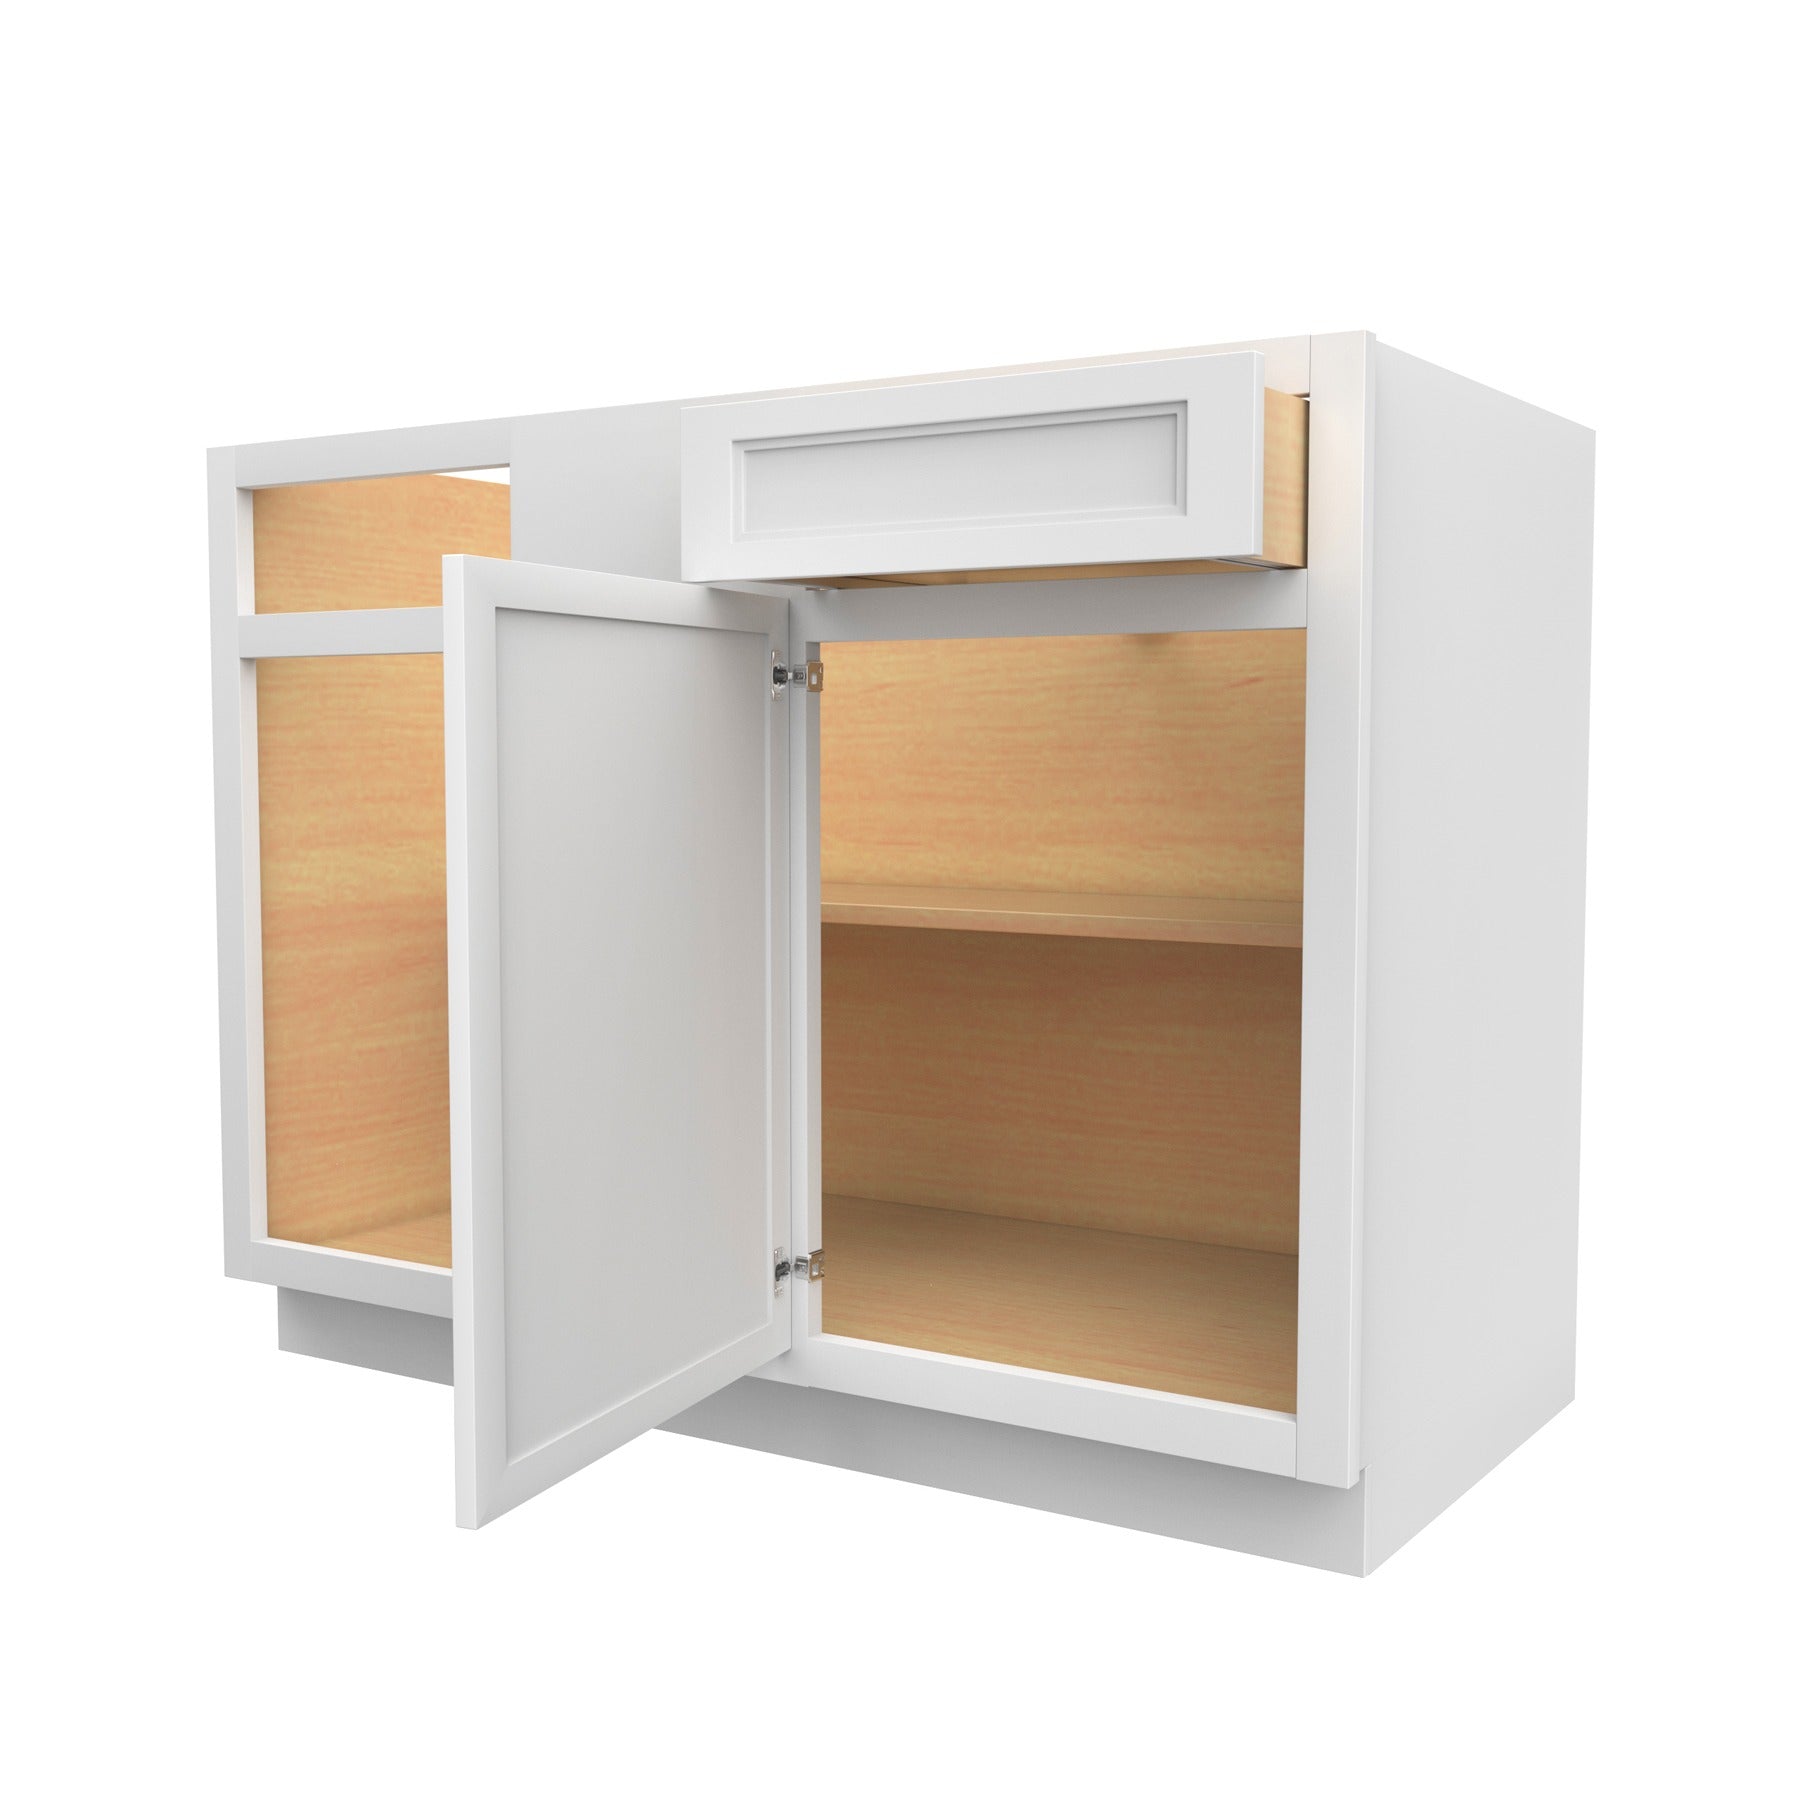 RTA - Fashion White - Blind Base Cabinet | 45"W x 34.5"H x 24"D